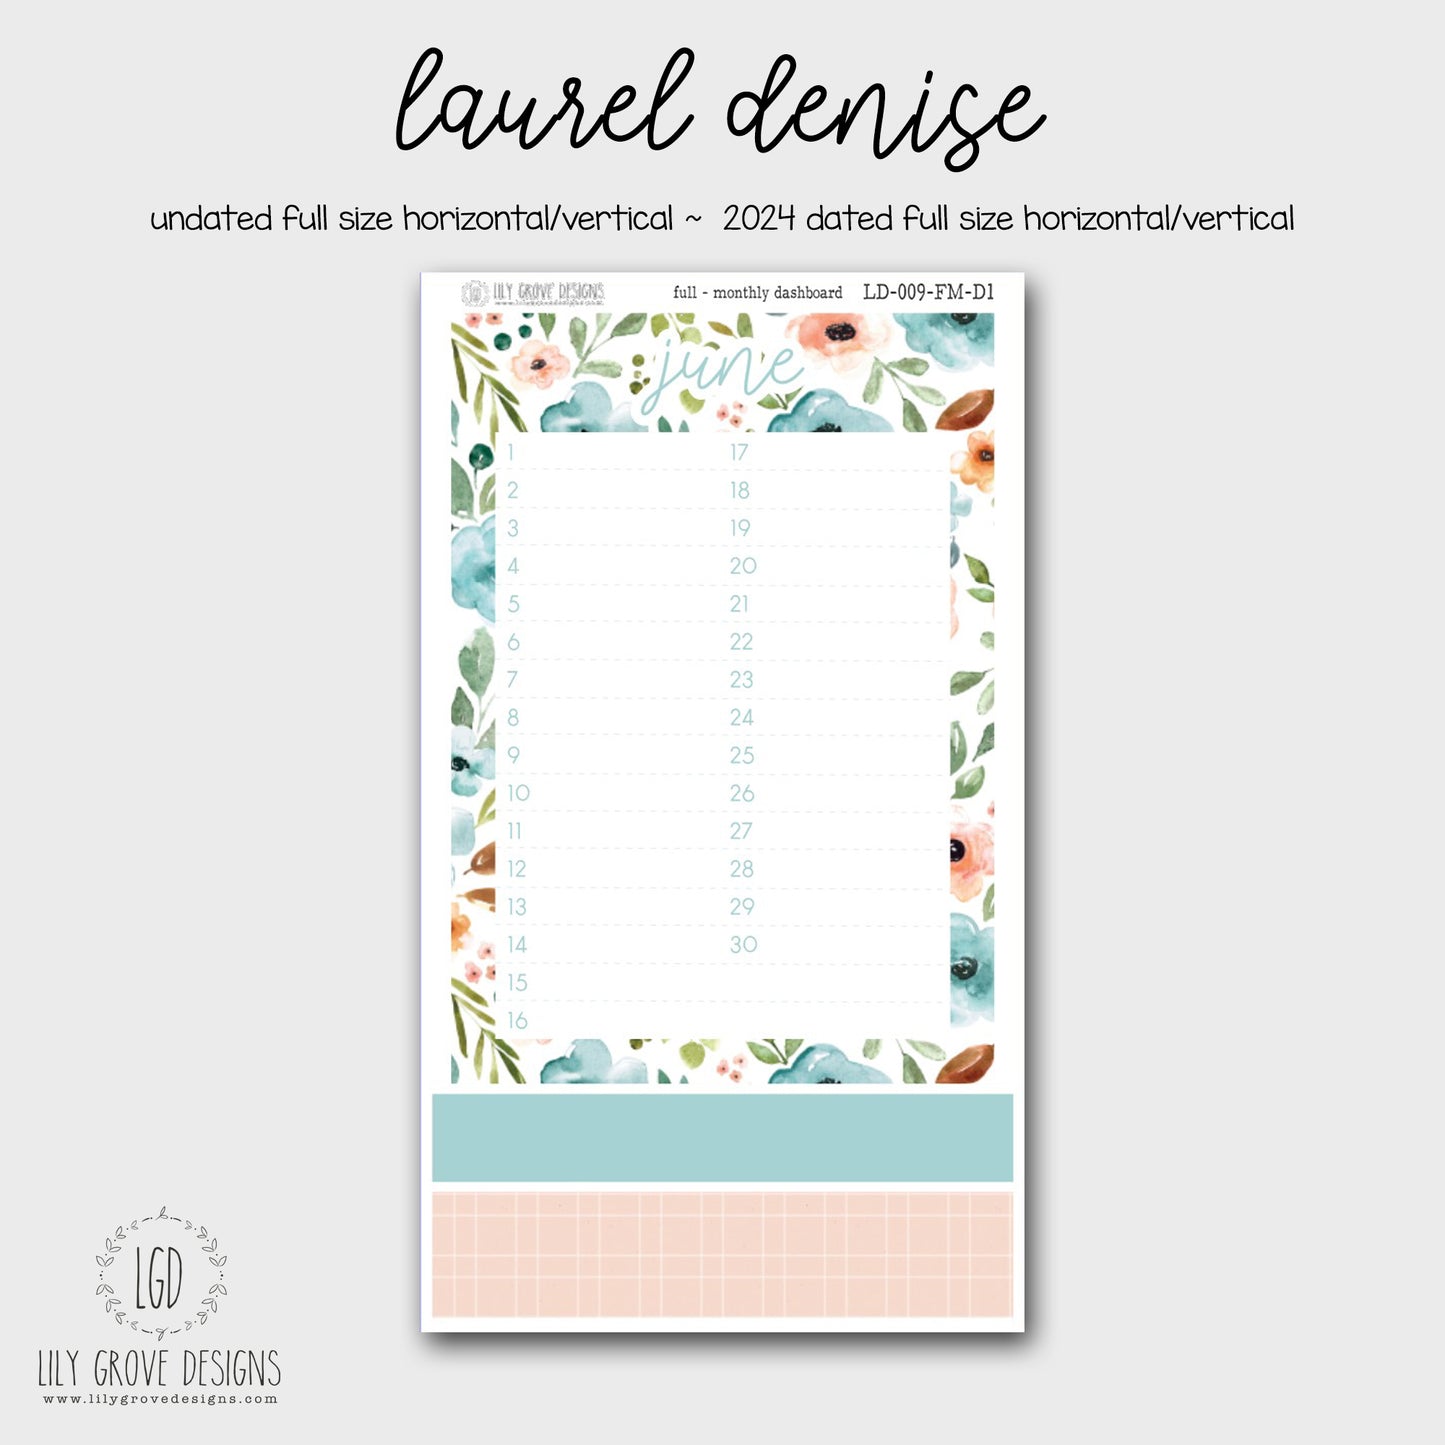 LD-009 - June Laurel Denise Monthly Dashboard Kit 1 - Full Horizontal - Full Vertical